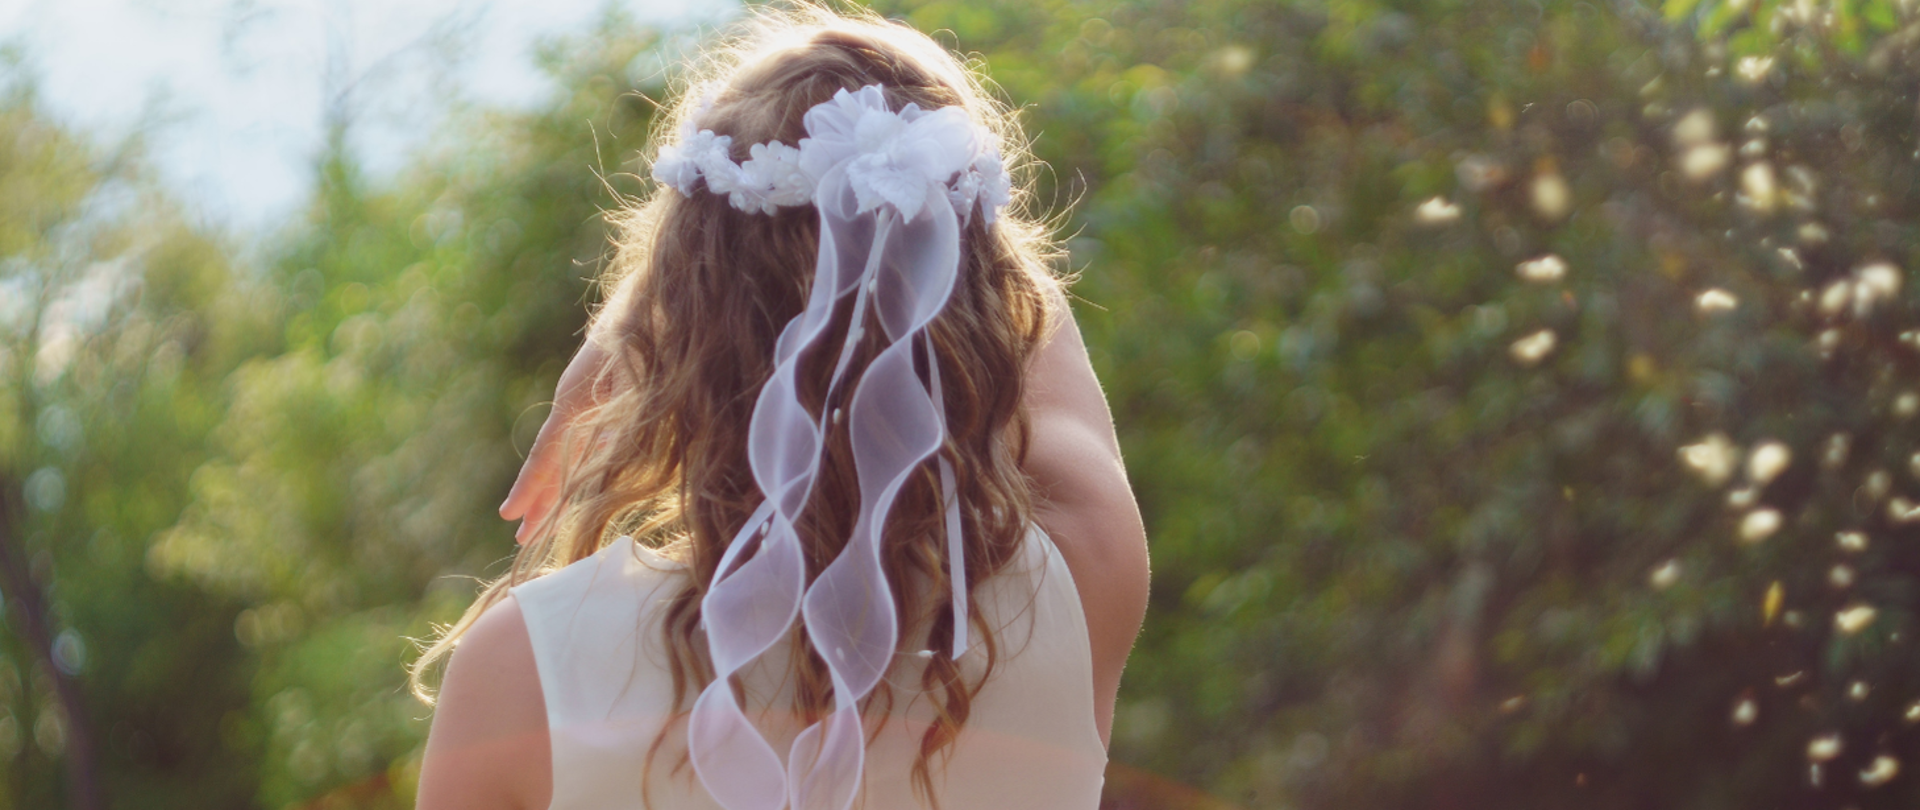 Odwrócona plecami dziewczynka pierwszokomunijna ubrana w biała sukienkę oraz mająca wianek na głowie.